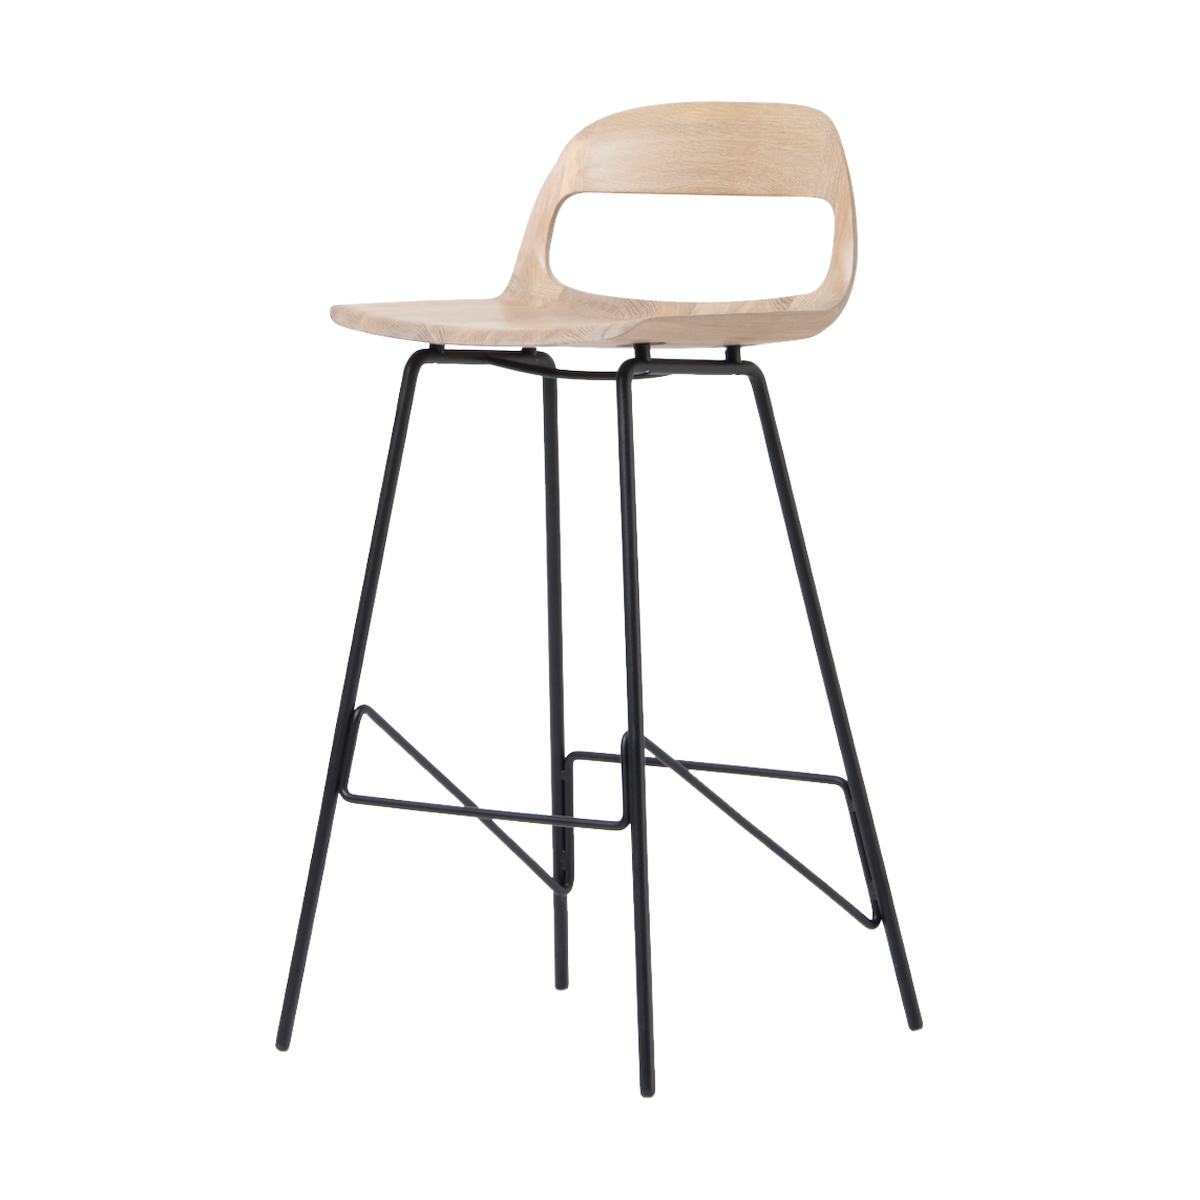 Leina bar chair - barkruk met houten zitting en zwart onderstel - 75 cm 